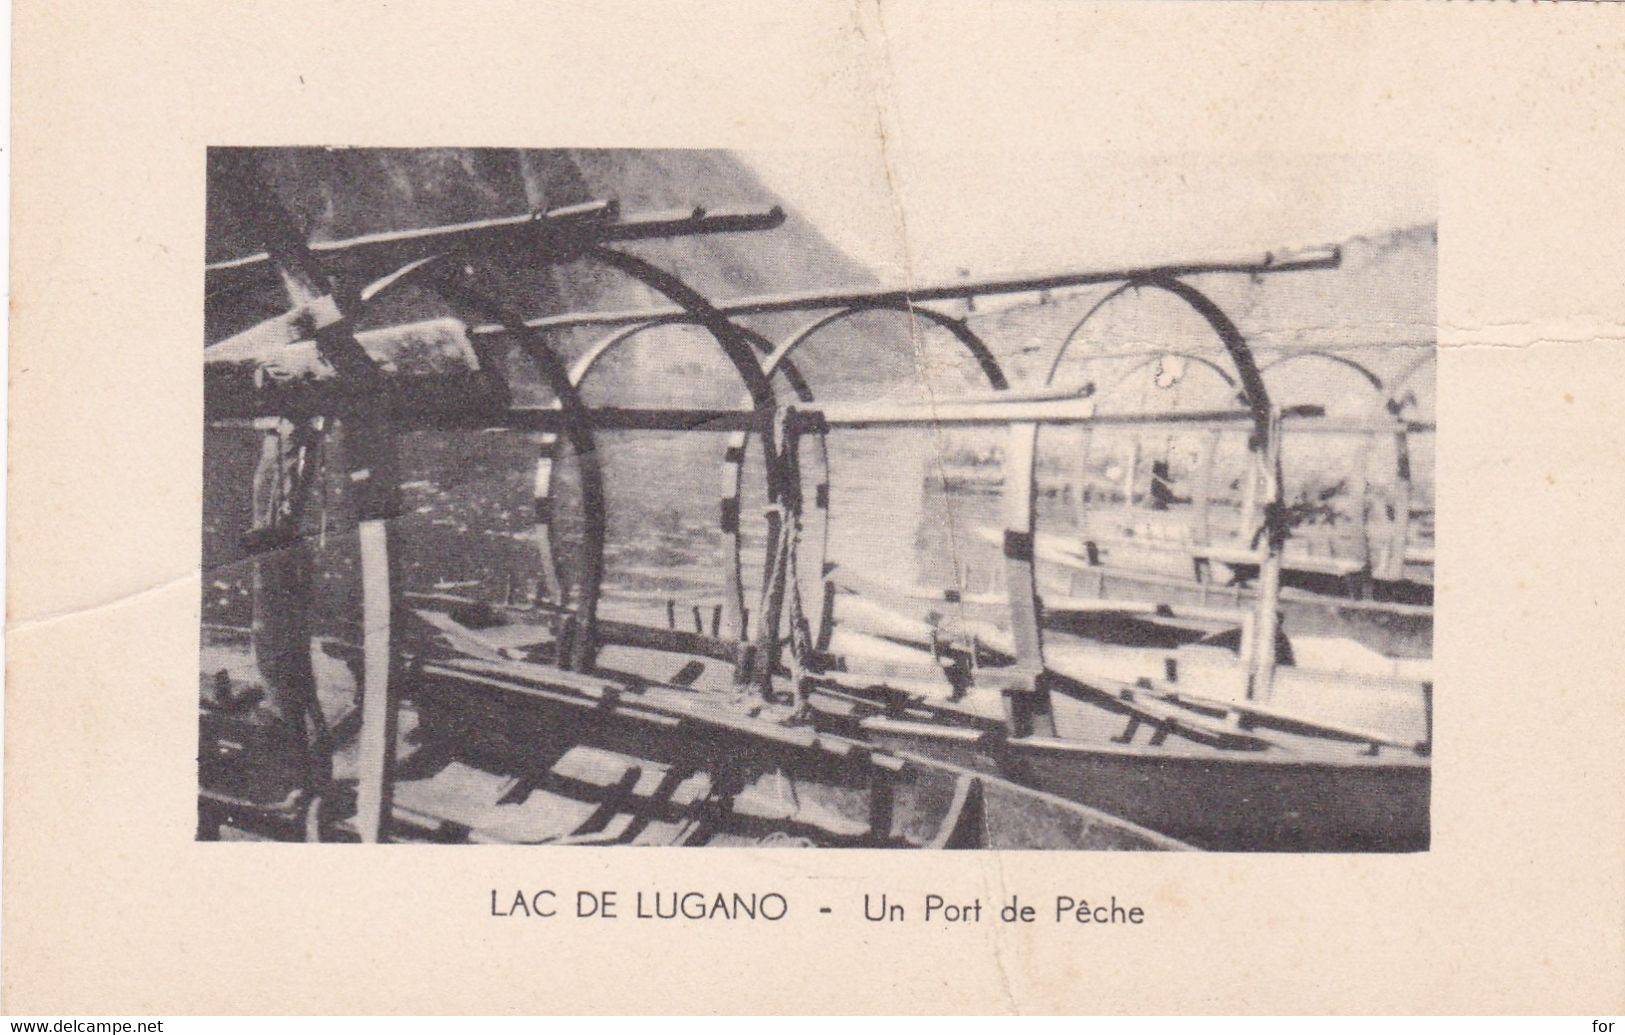 Suisse : TI Tessin : Lac De Lugano : Un Port De Pêche : Collection Des Laboratoires BADEL - Valence - Drôme : - Lugano